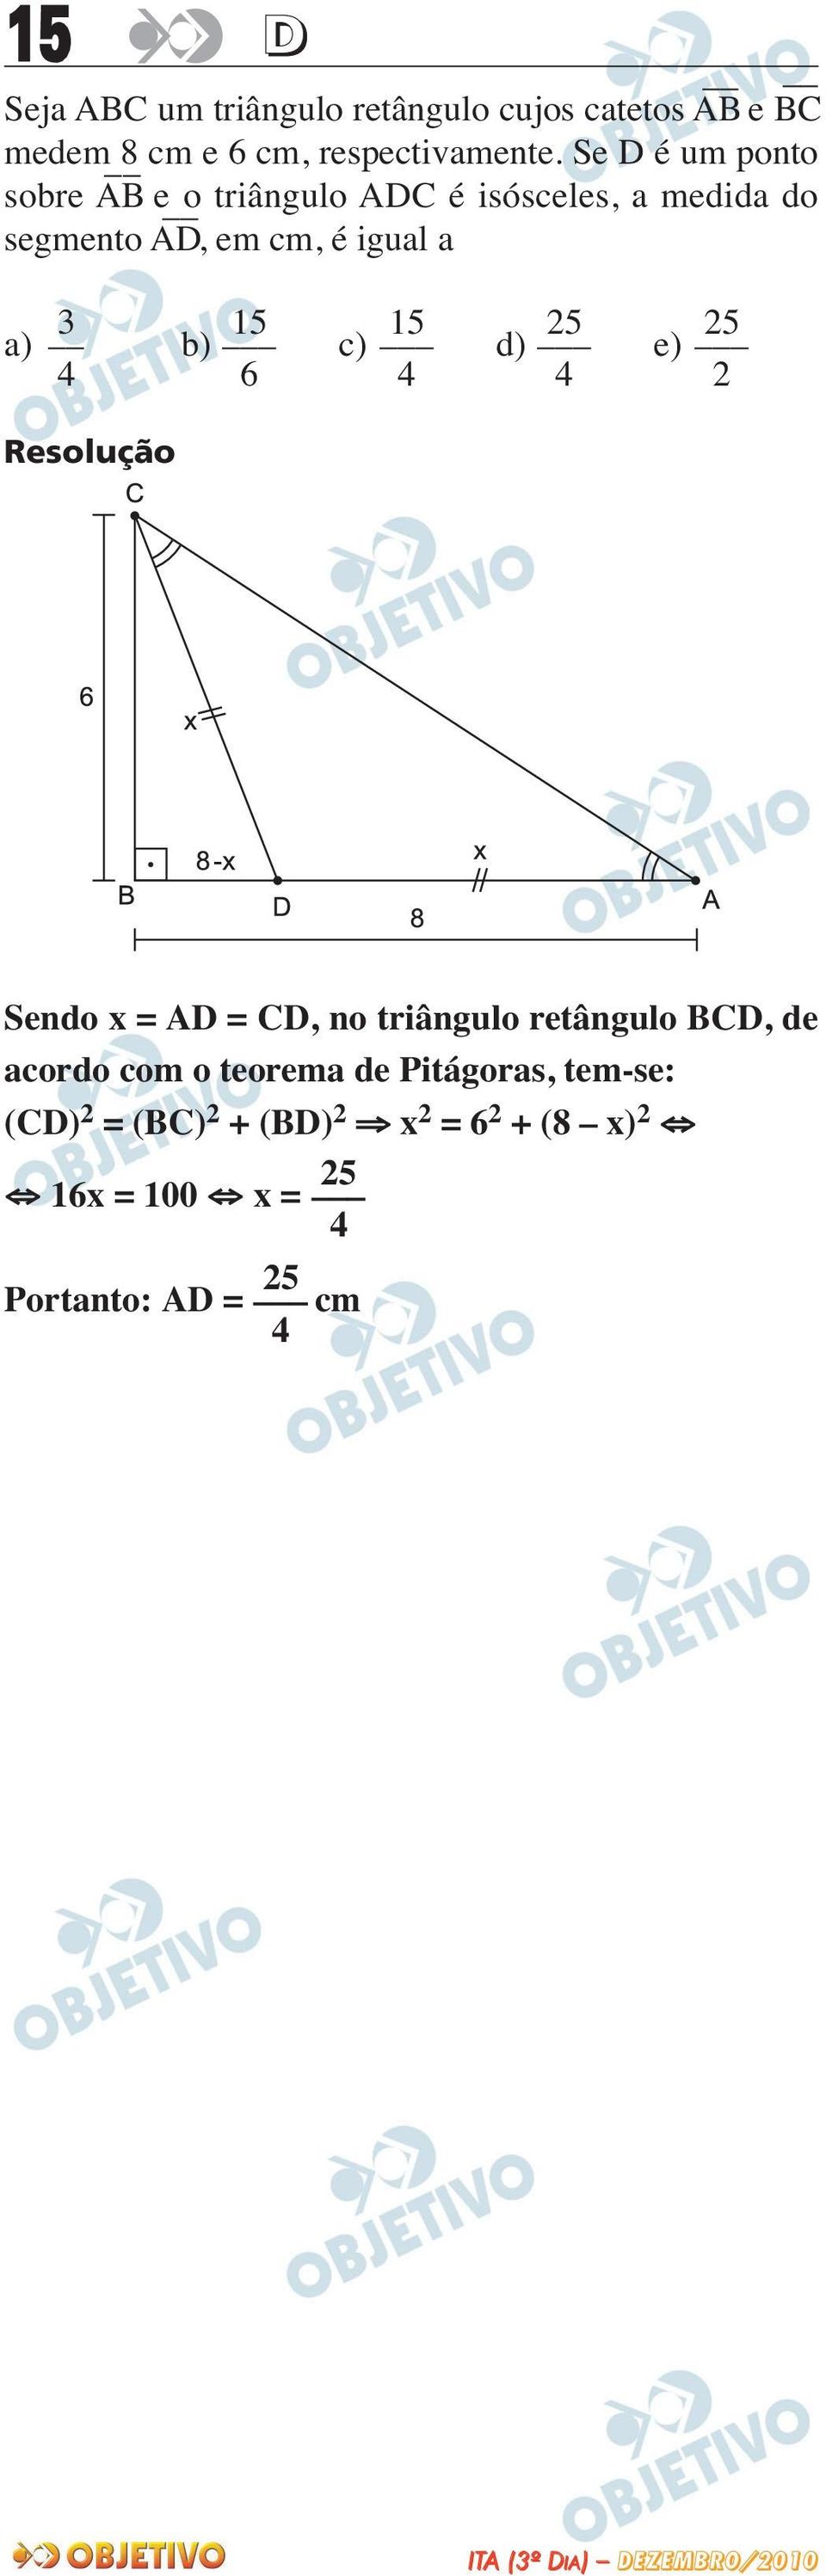 5 5 a) b) c) d) e) 4 6 4 4 Sendo x = AD = CD, no triângulo retângulo BCD, de acordo com o teorema de